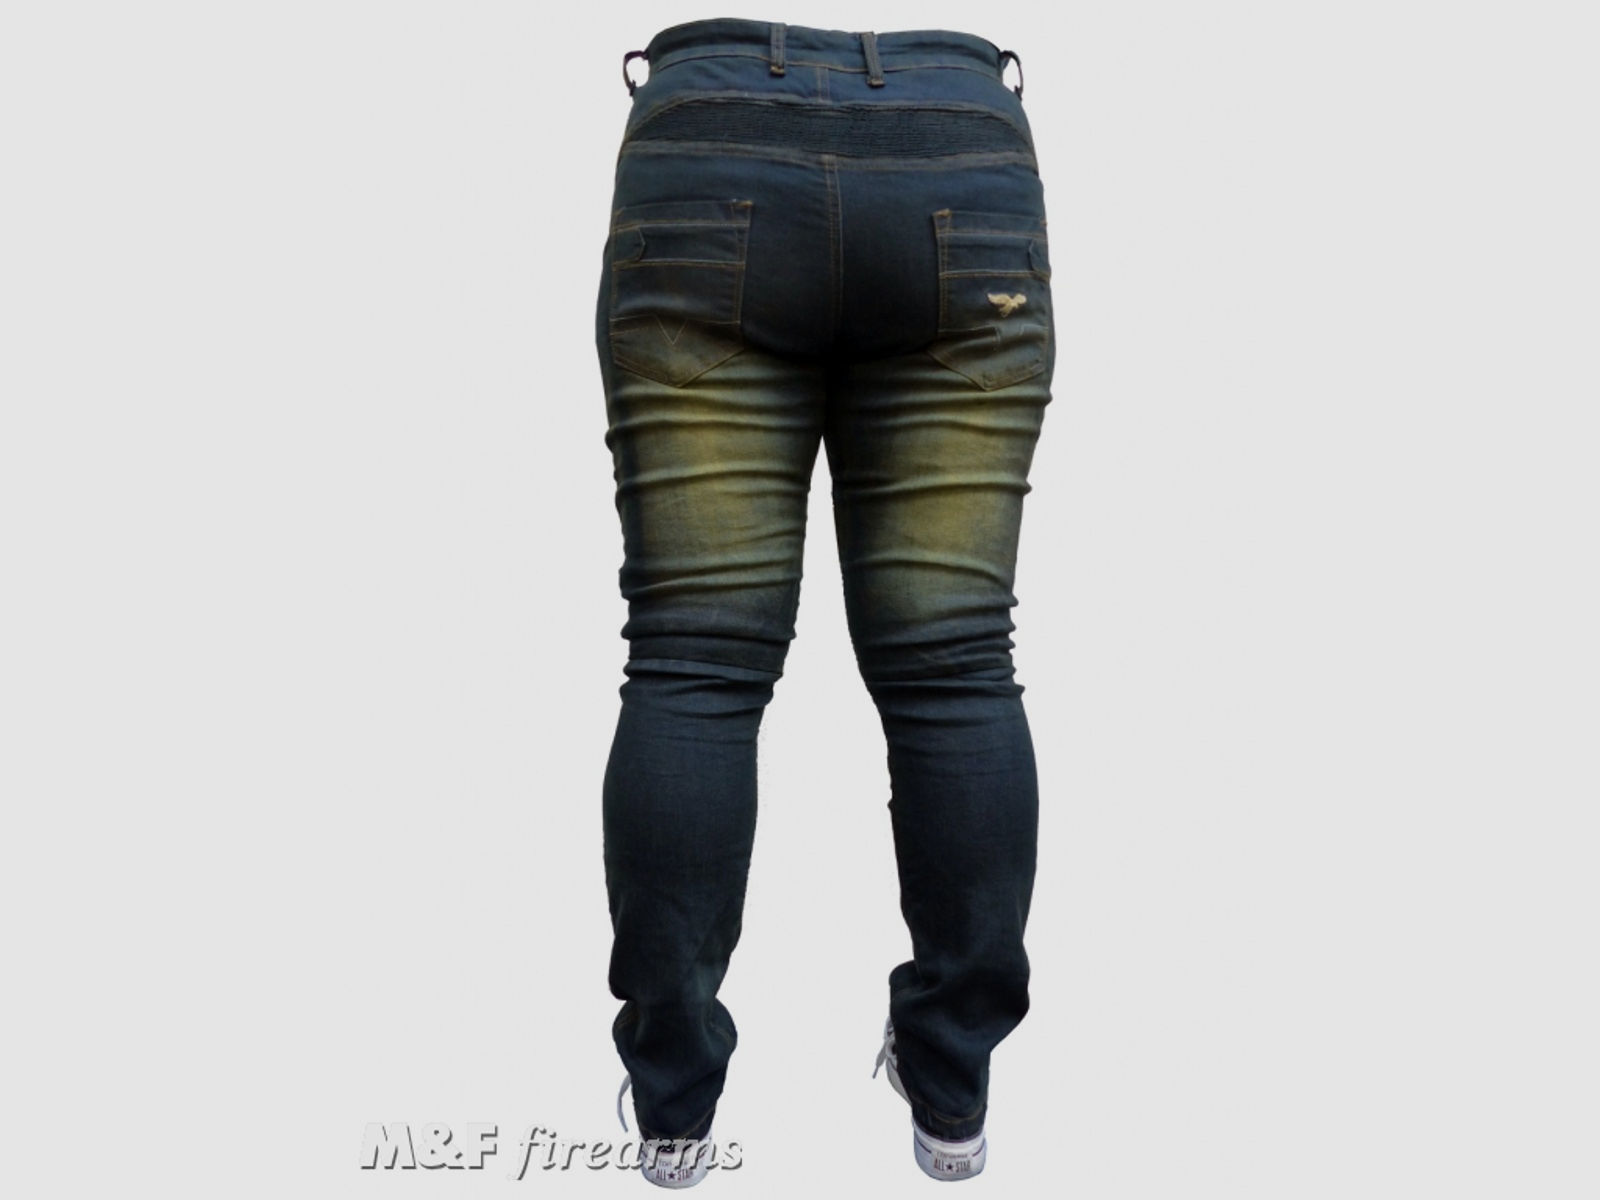 Damen Road- Jeans "Stonewashed" in Antik- Optik DENIM- Stretch- Gewebe mit Netz- und Aramidfaser- Futter sowie Knieprotektoren